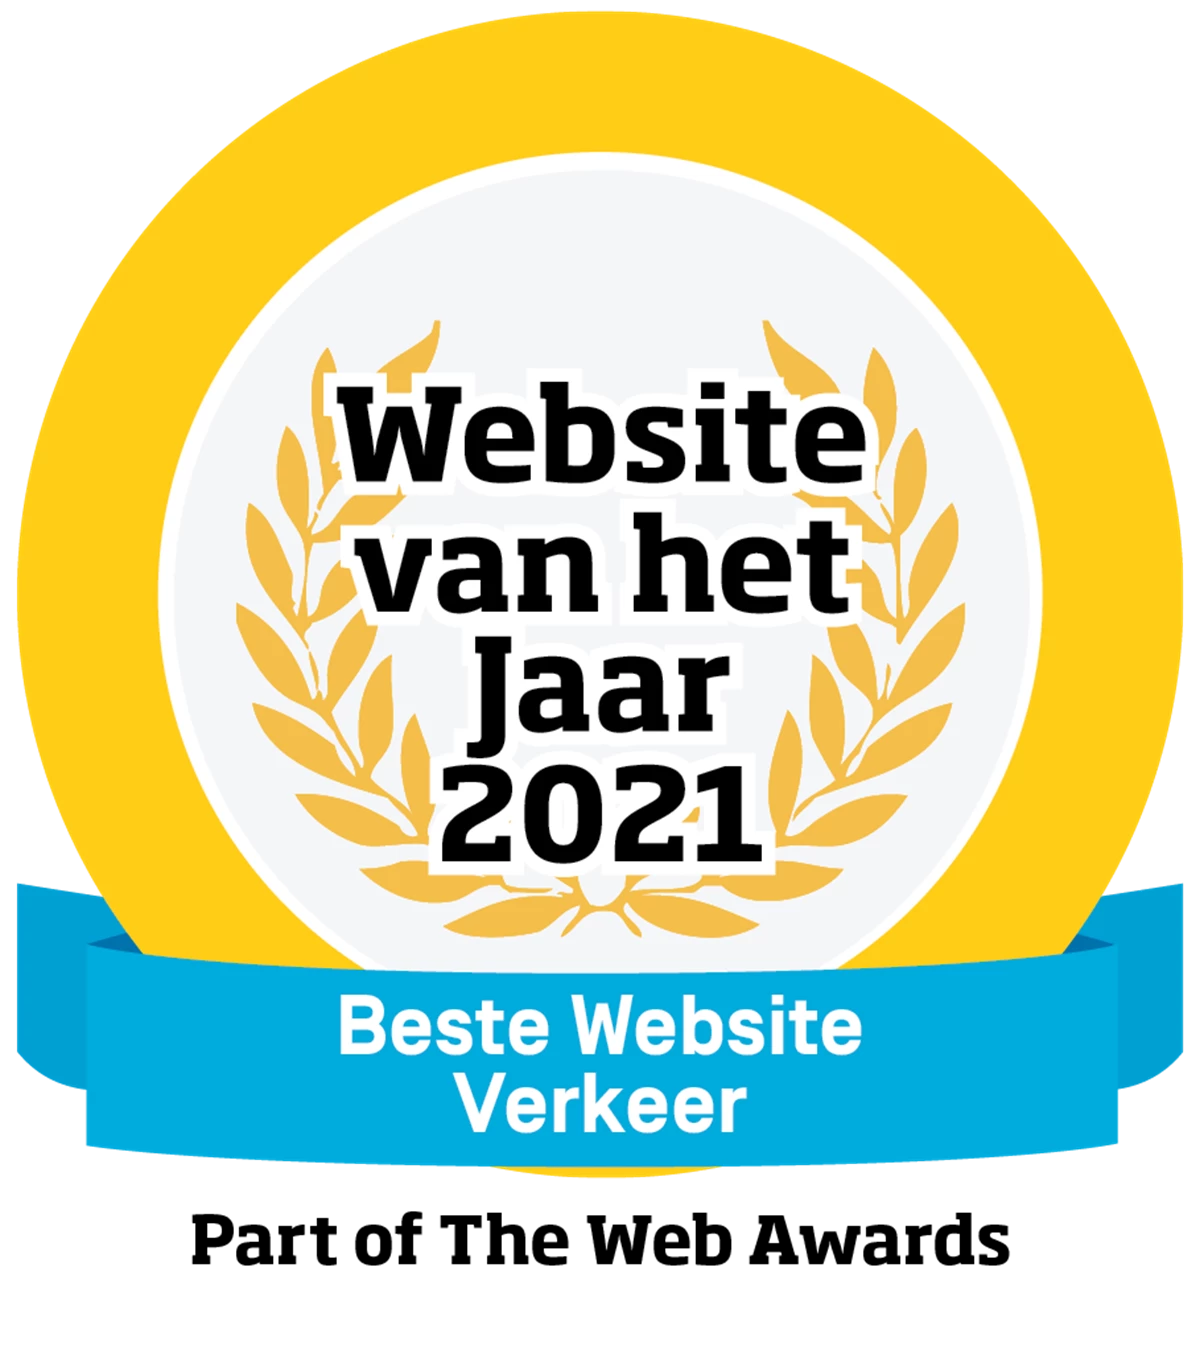 Logo voor beste website van het jaar in de categorie Verkeer